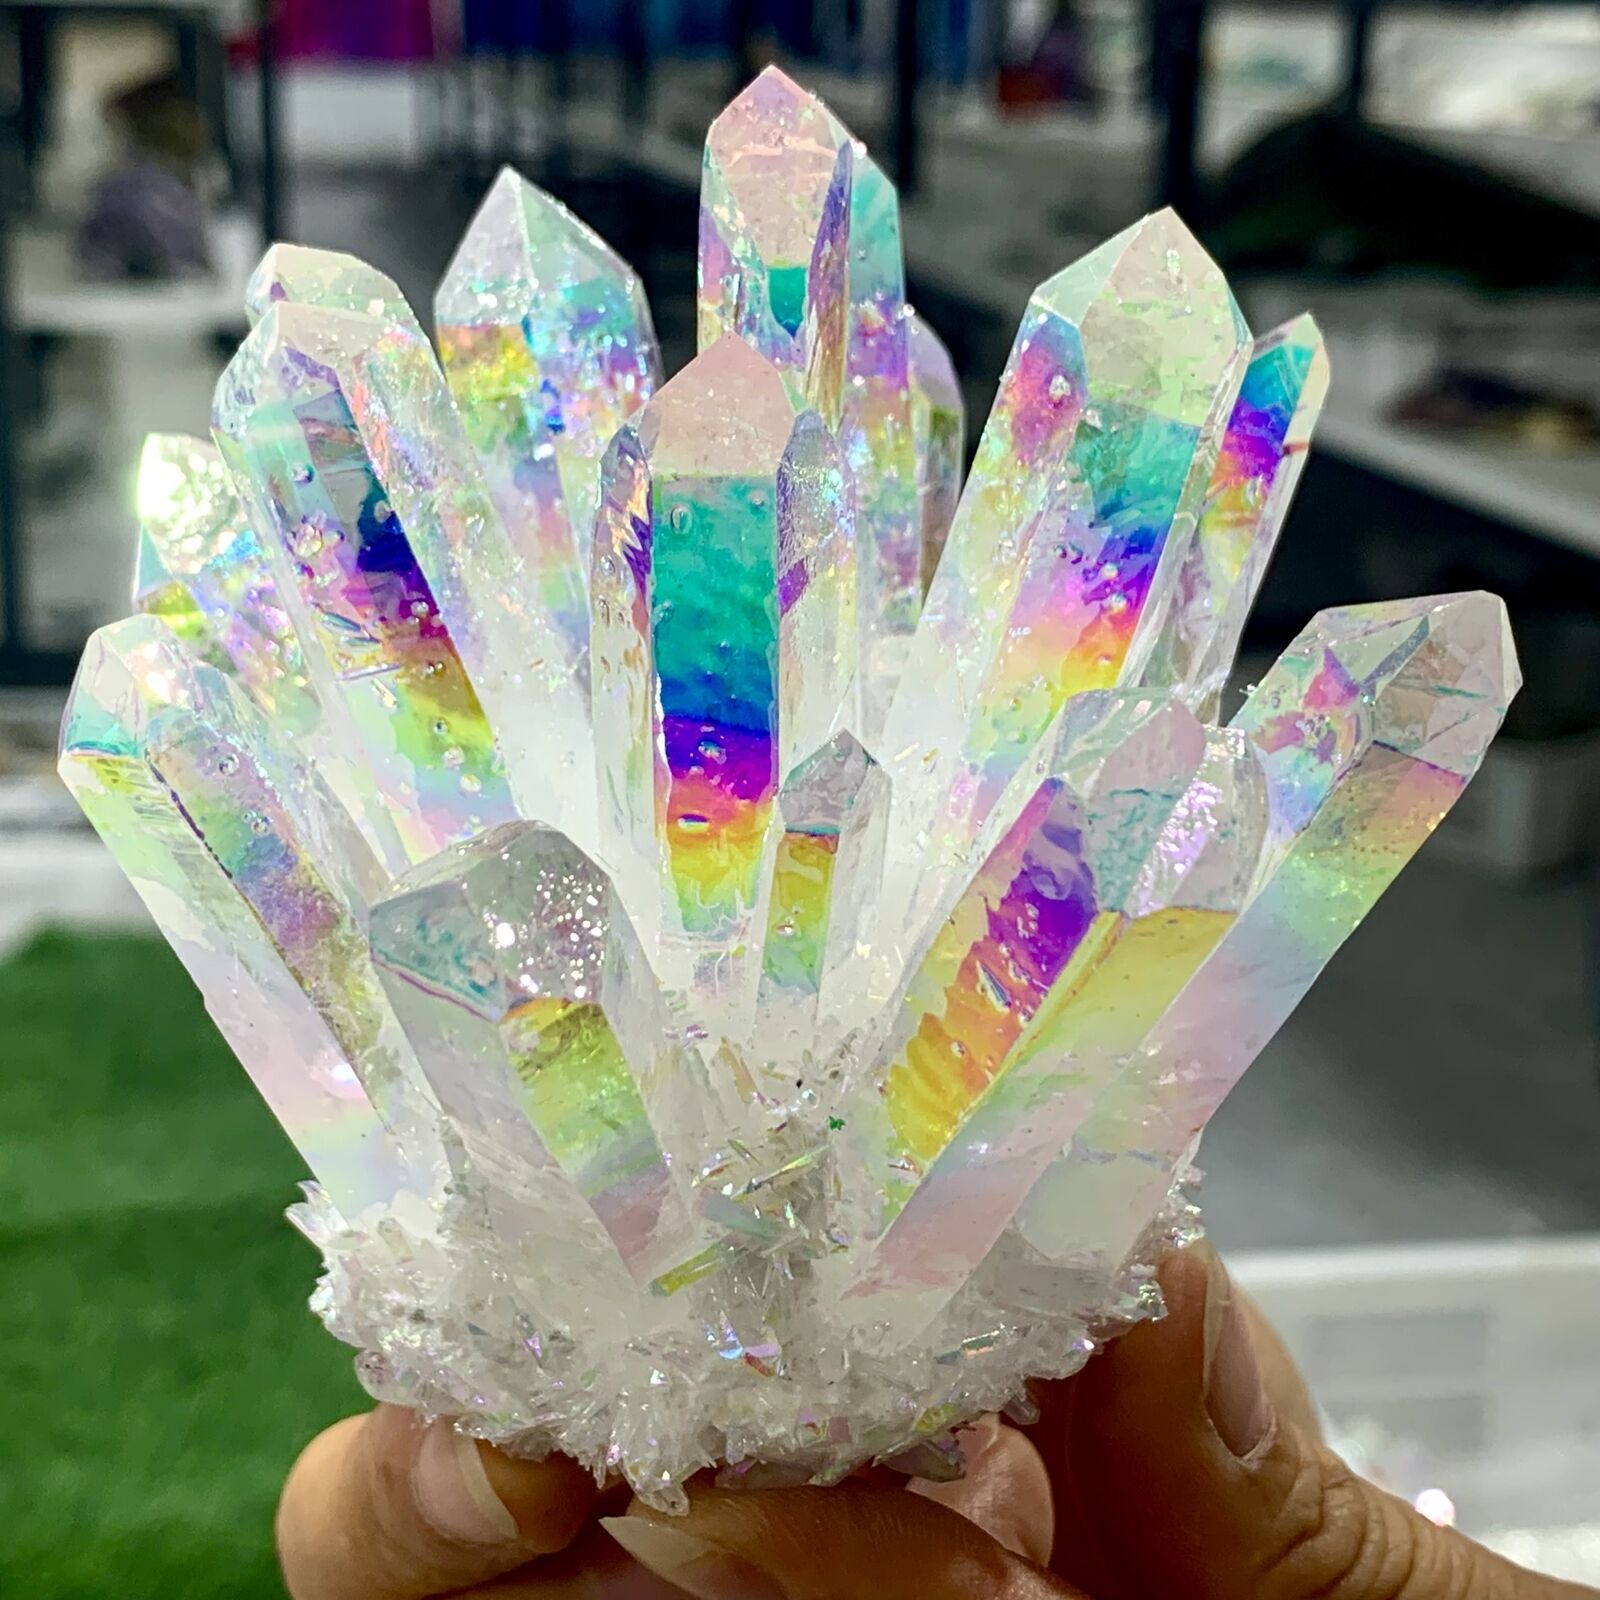 397G Angel Aura Quartz TitaniumBismuth Siliconcluster Rainbow Crystals Stone